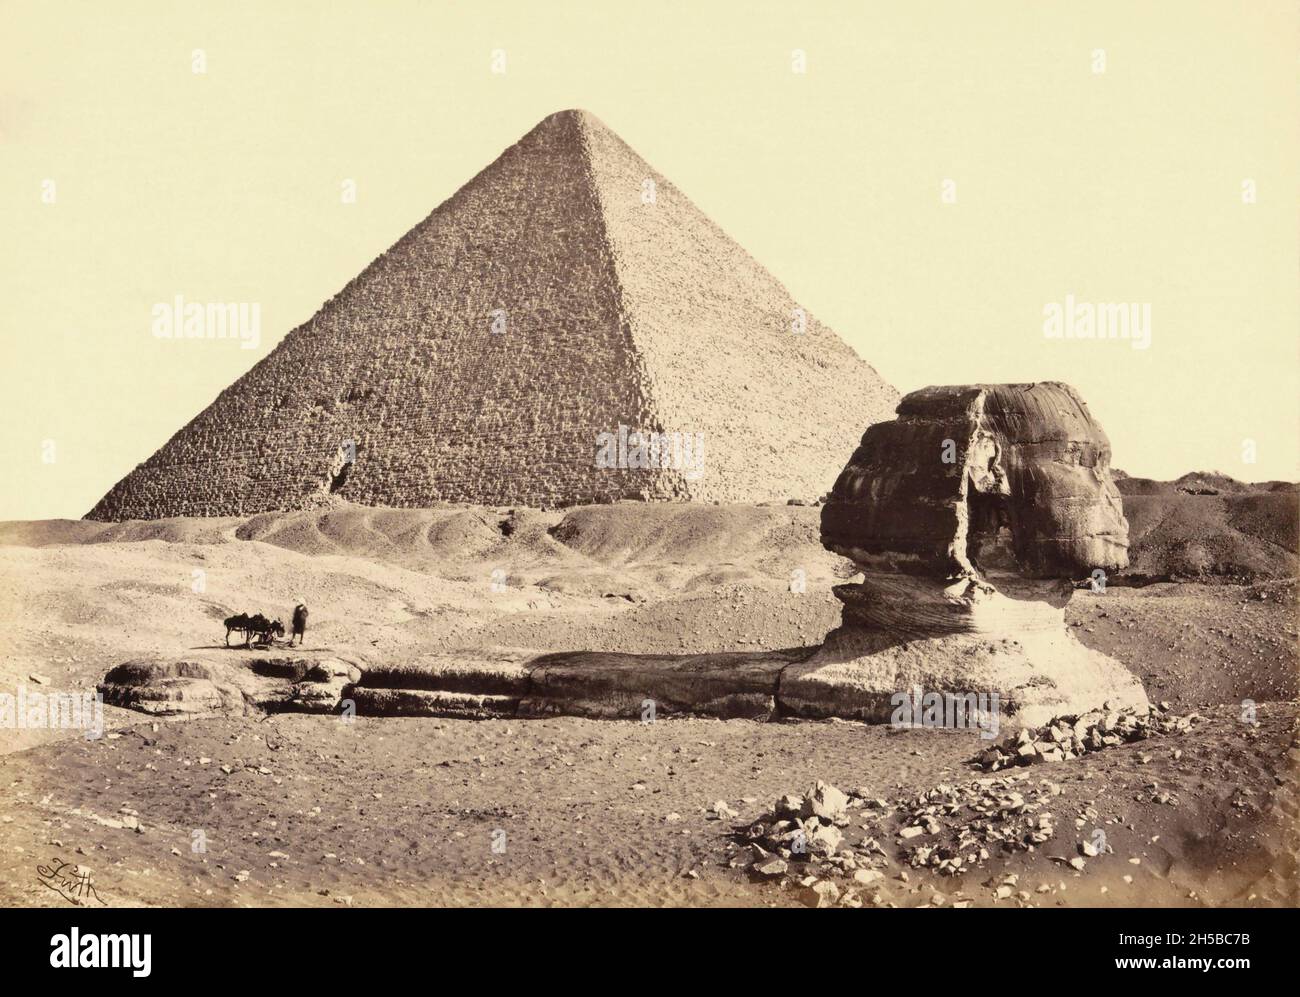 La Grande Pyramide de Gizeh, parfois appelée Pyramide de Khufu ou Pyramide de Cheops, la plus grande du complexe de la pyramide de Gizeh à Gizeh, en dehors du Caire, Egypte.Au premier plan se trouve le Grand Sphinx de Gizeh.Au milieu du XIXe siècle, lorsque cette photo a été prise par le photographe anglais Francis Frith, le Sphinx n'était encore que partiellement fouillé.Les pyramides et le Sphinx font maintenant partie du site du patrimoine mondial de l'UNESCO. Banque D'Images